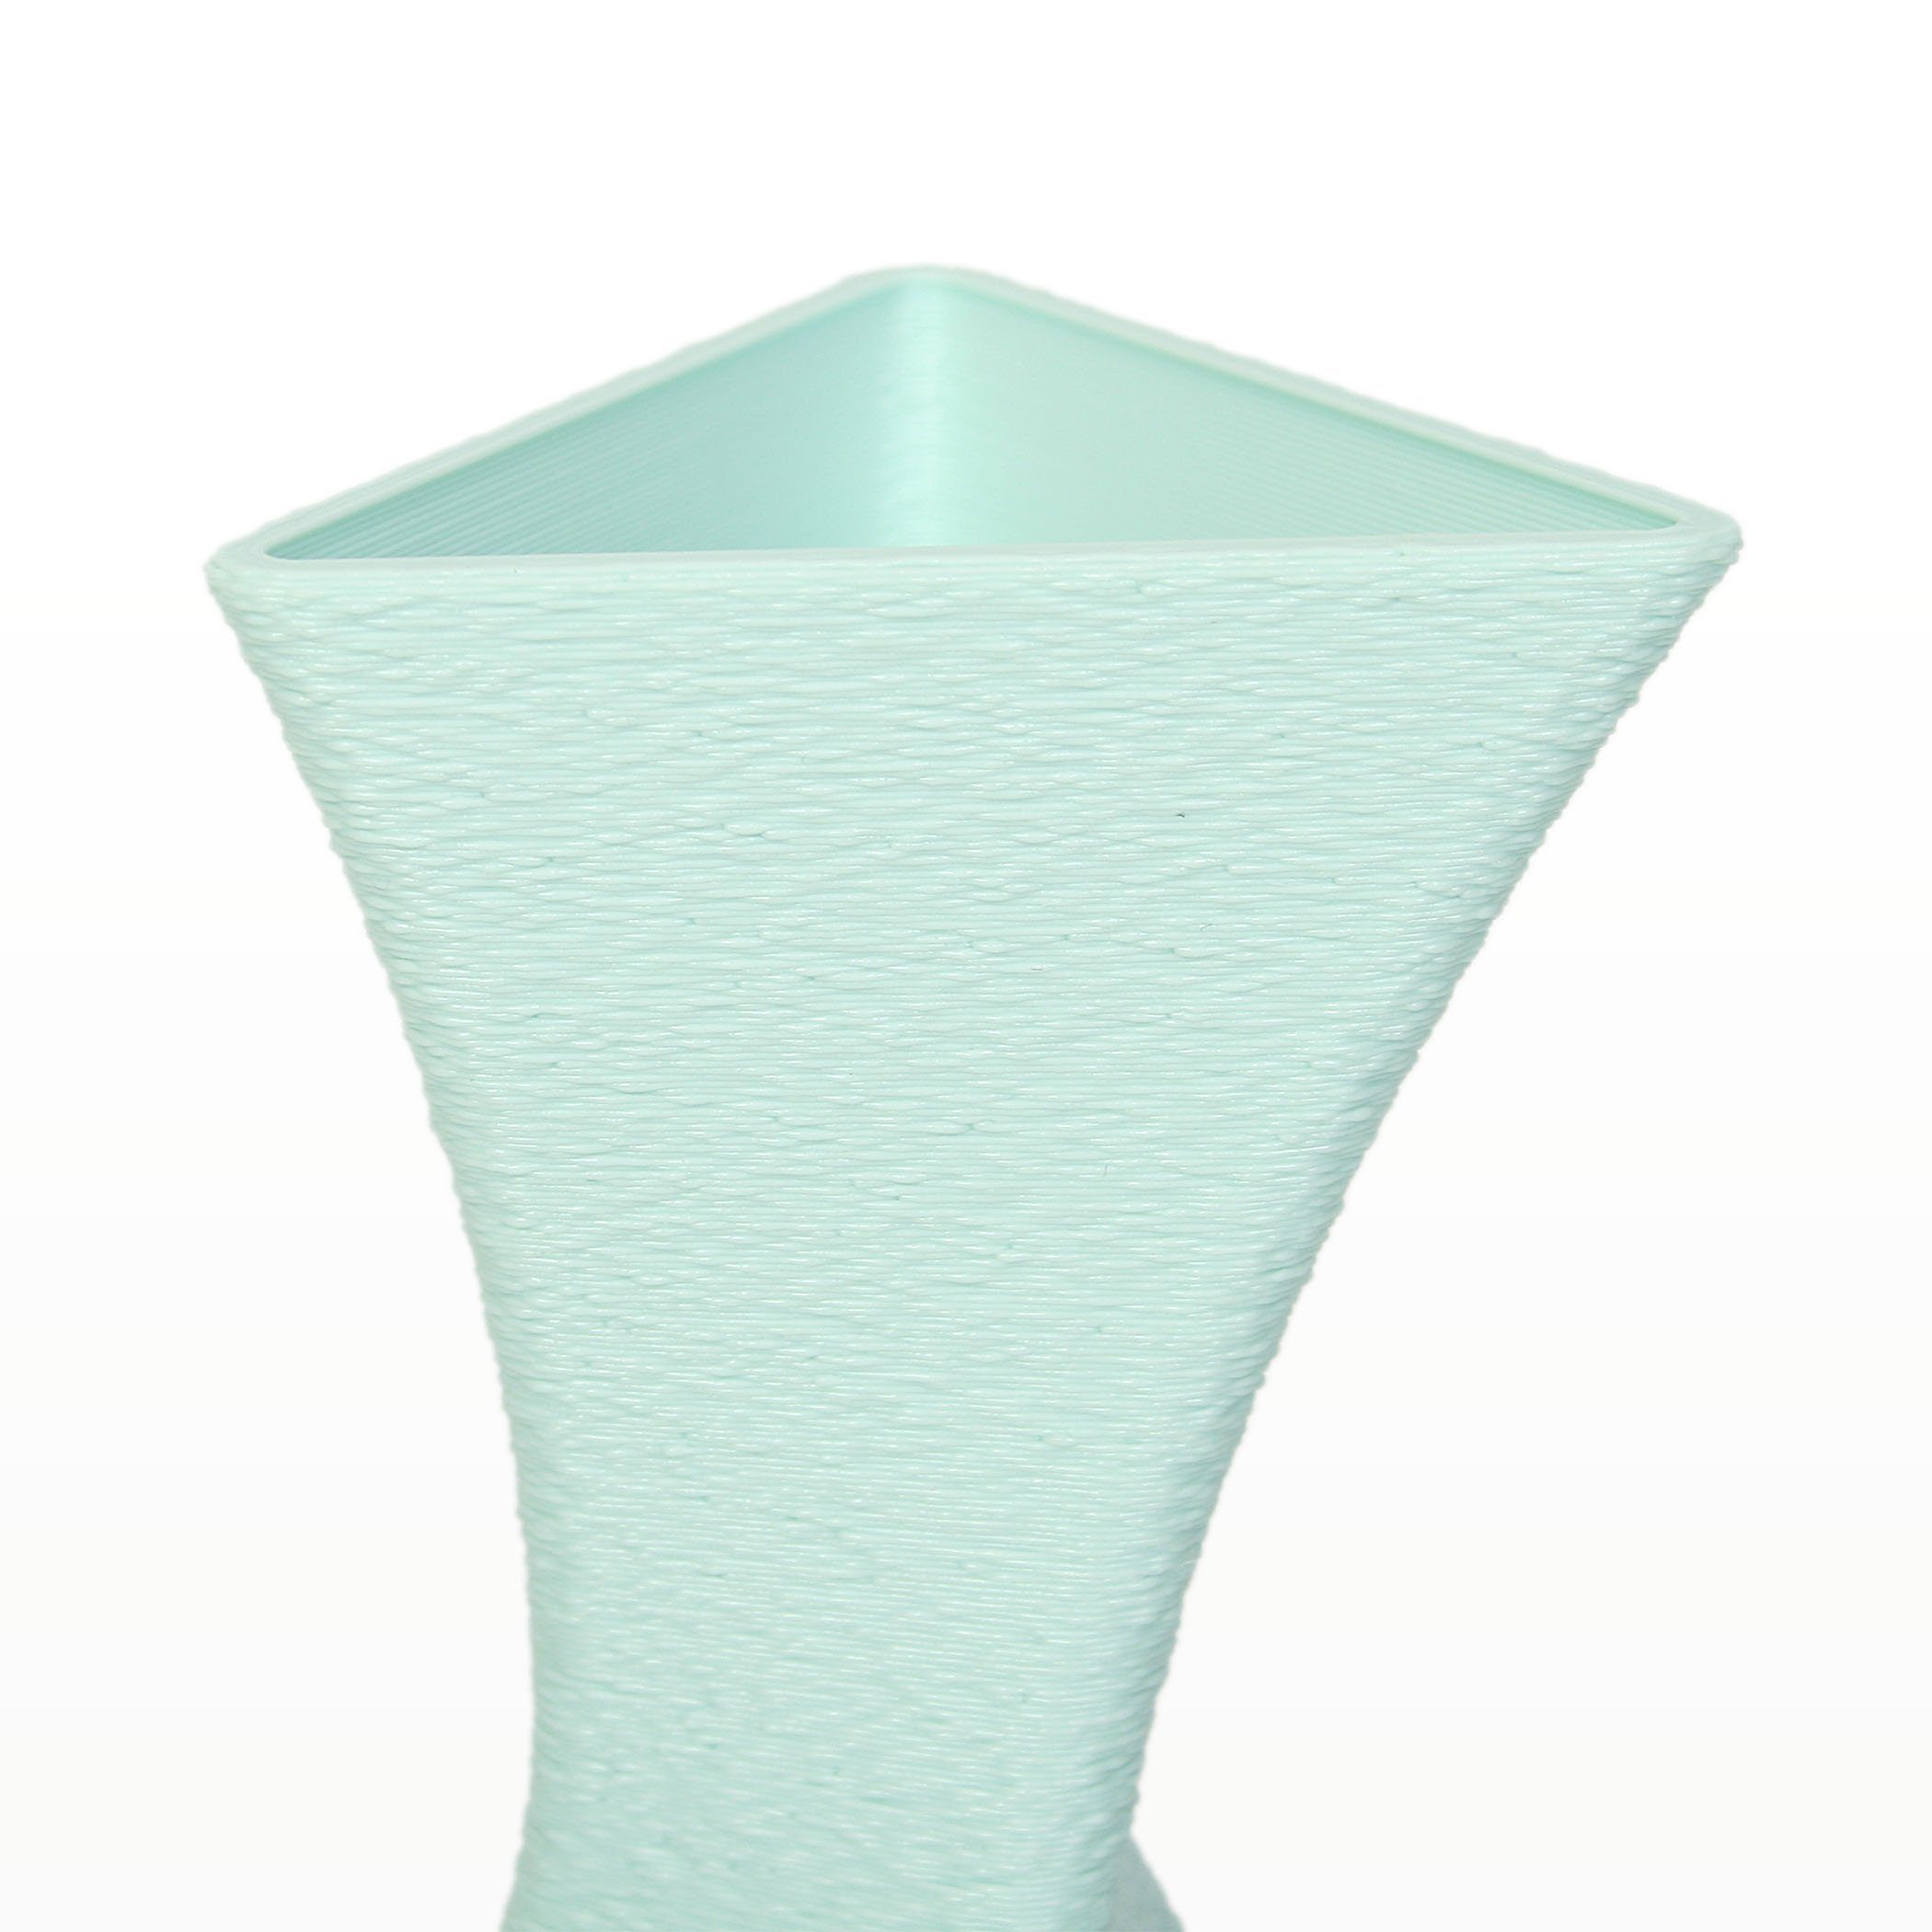 Water Vase Feder Designer Kreative wasserdicht – & Dekorative Green Blumenvase aus Dekovase bruchsicher nachwachsenden Bio-Kunststoff, Rohstoffen; aus